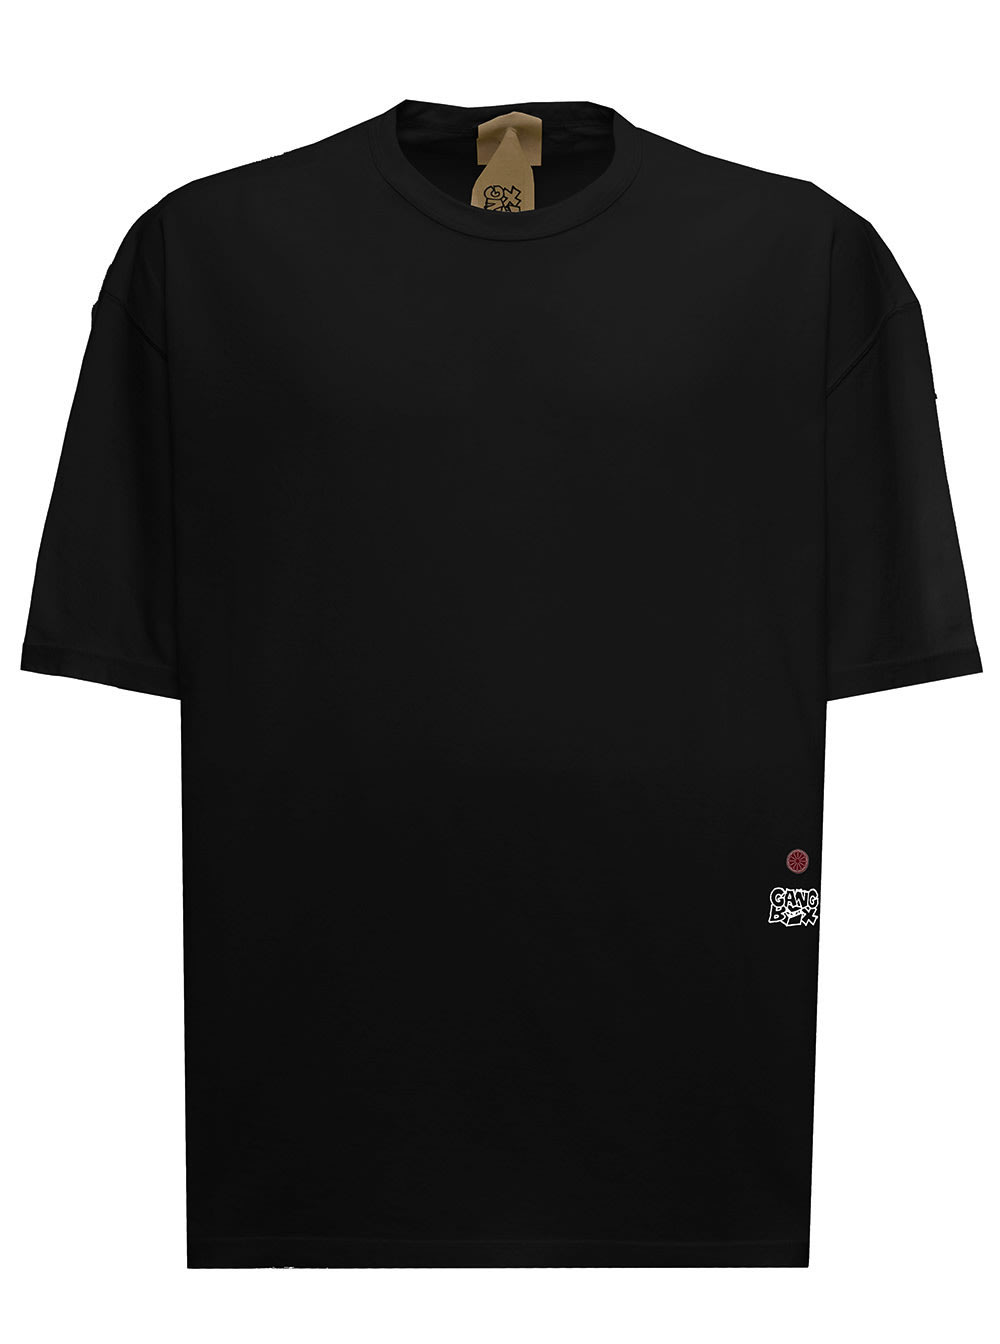 Ten C Mans Black Cotton T-shirt With Back Print